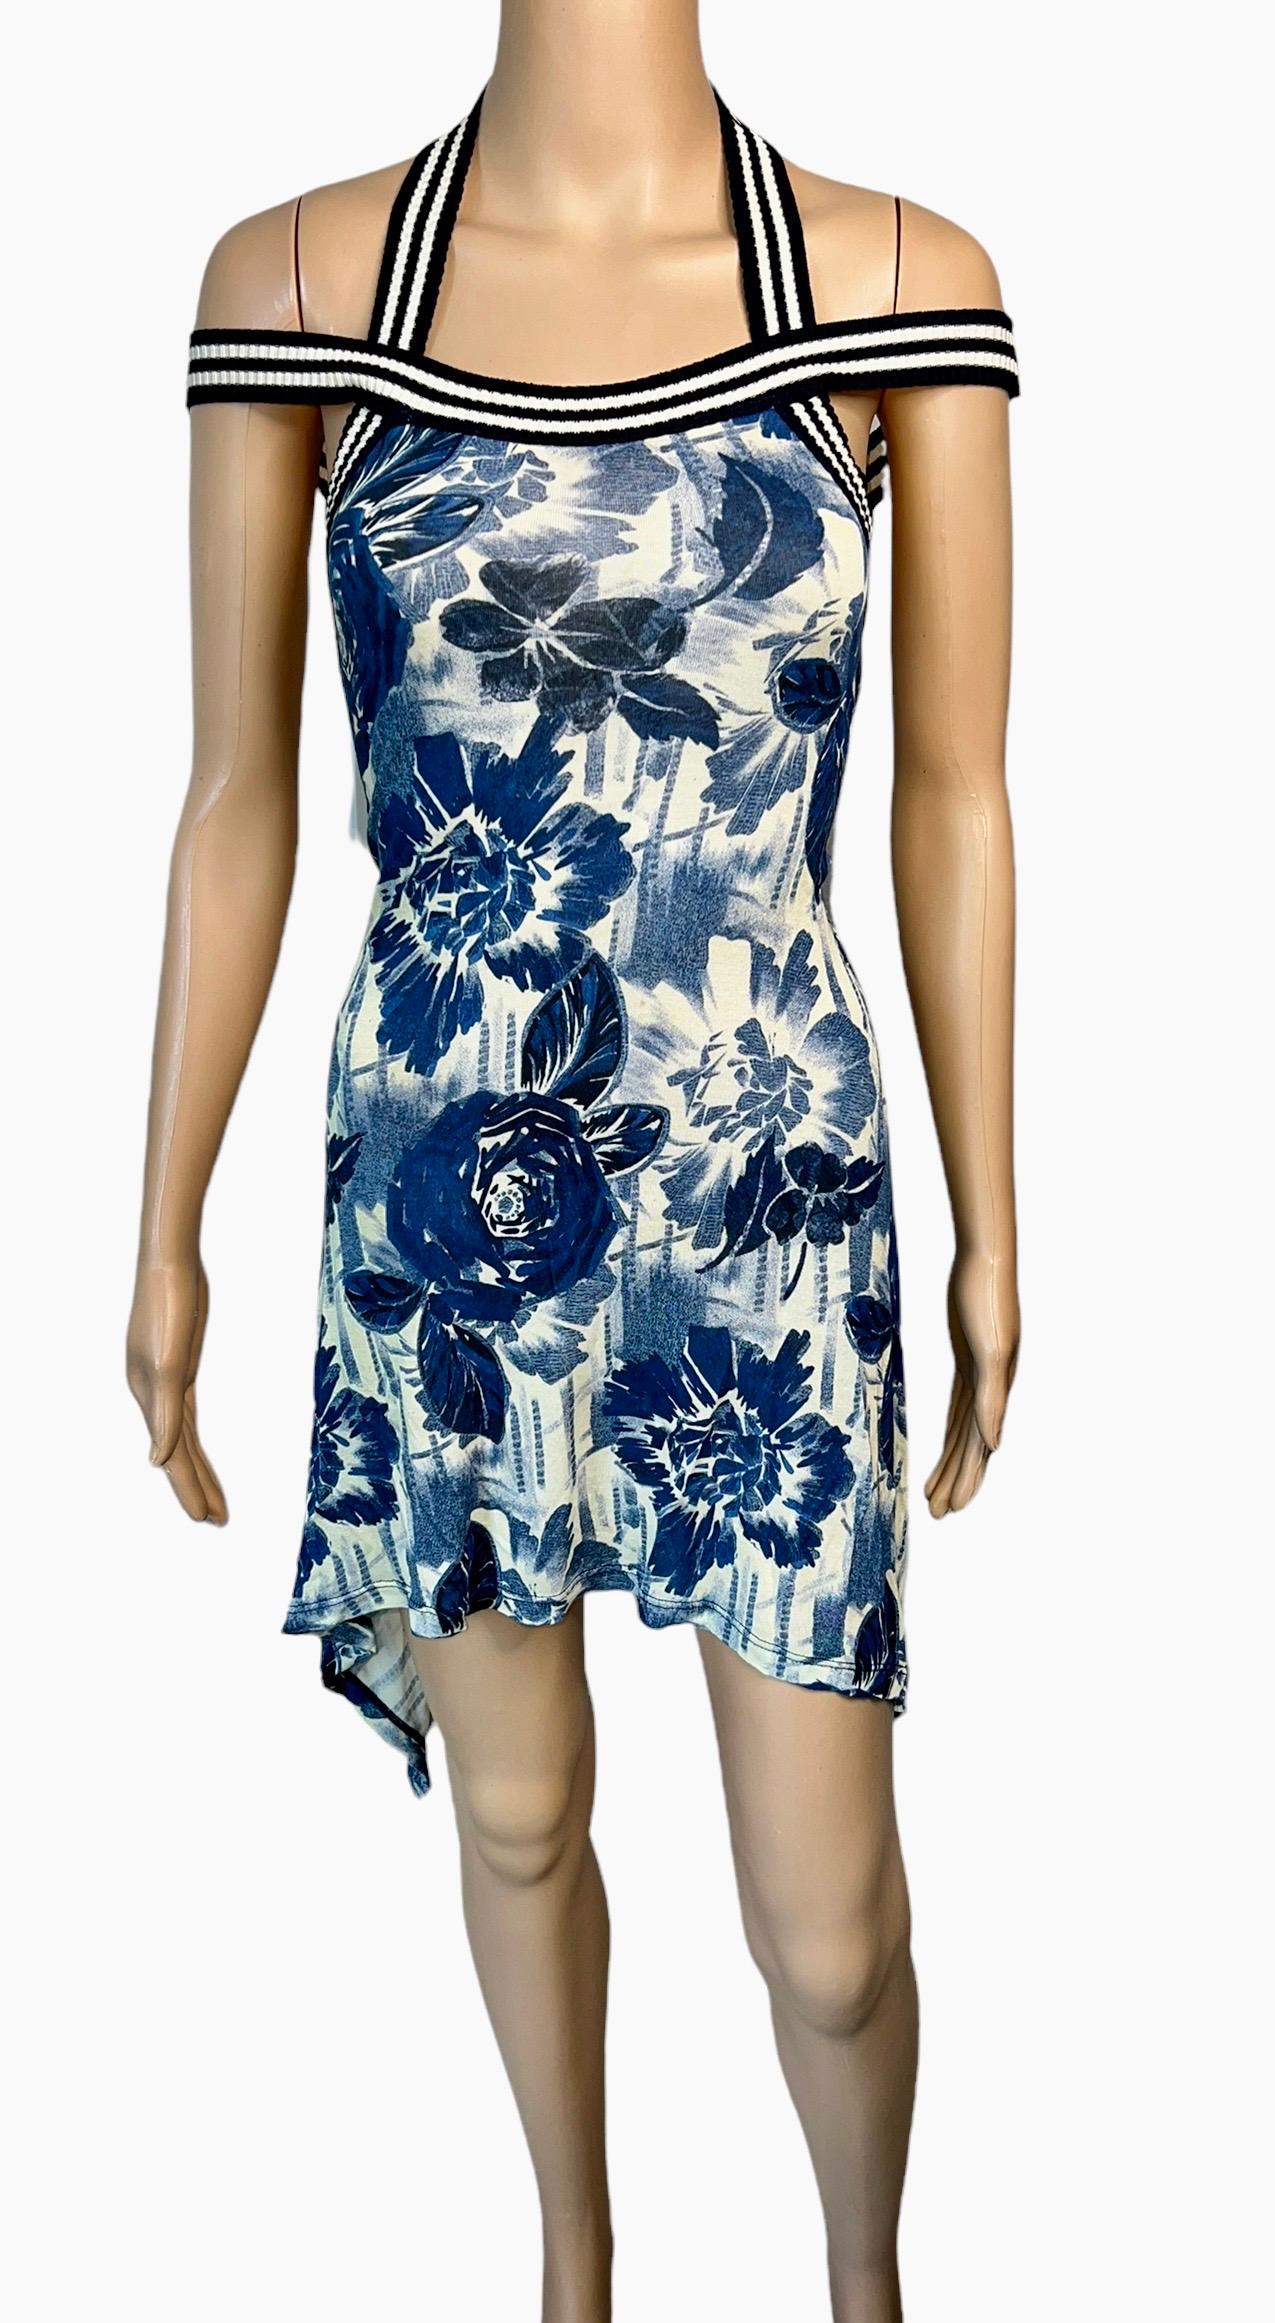 Jean Paul Gaultier Soleil S/S 2007 Mini robe à imprimé floral Taille XS